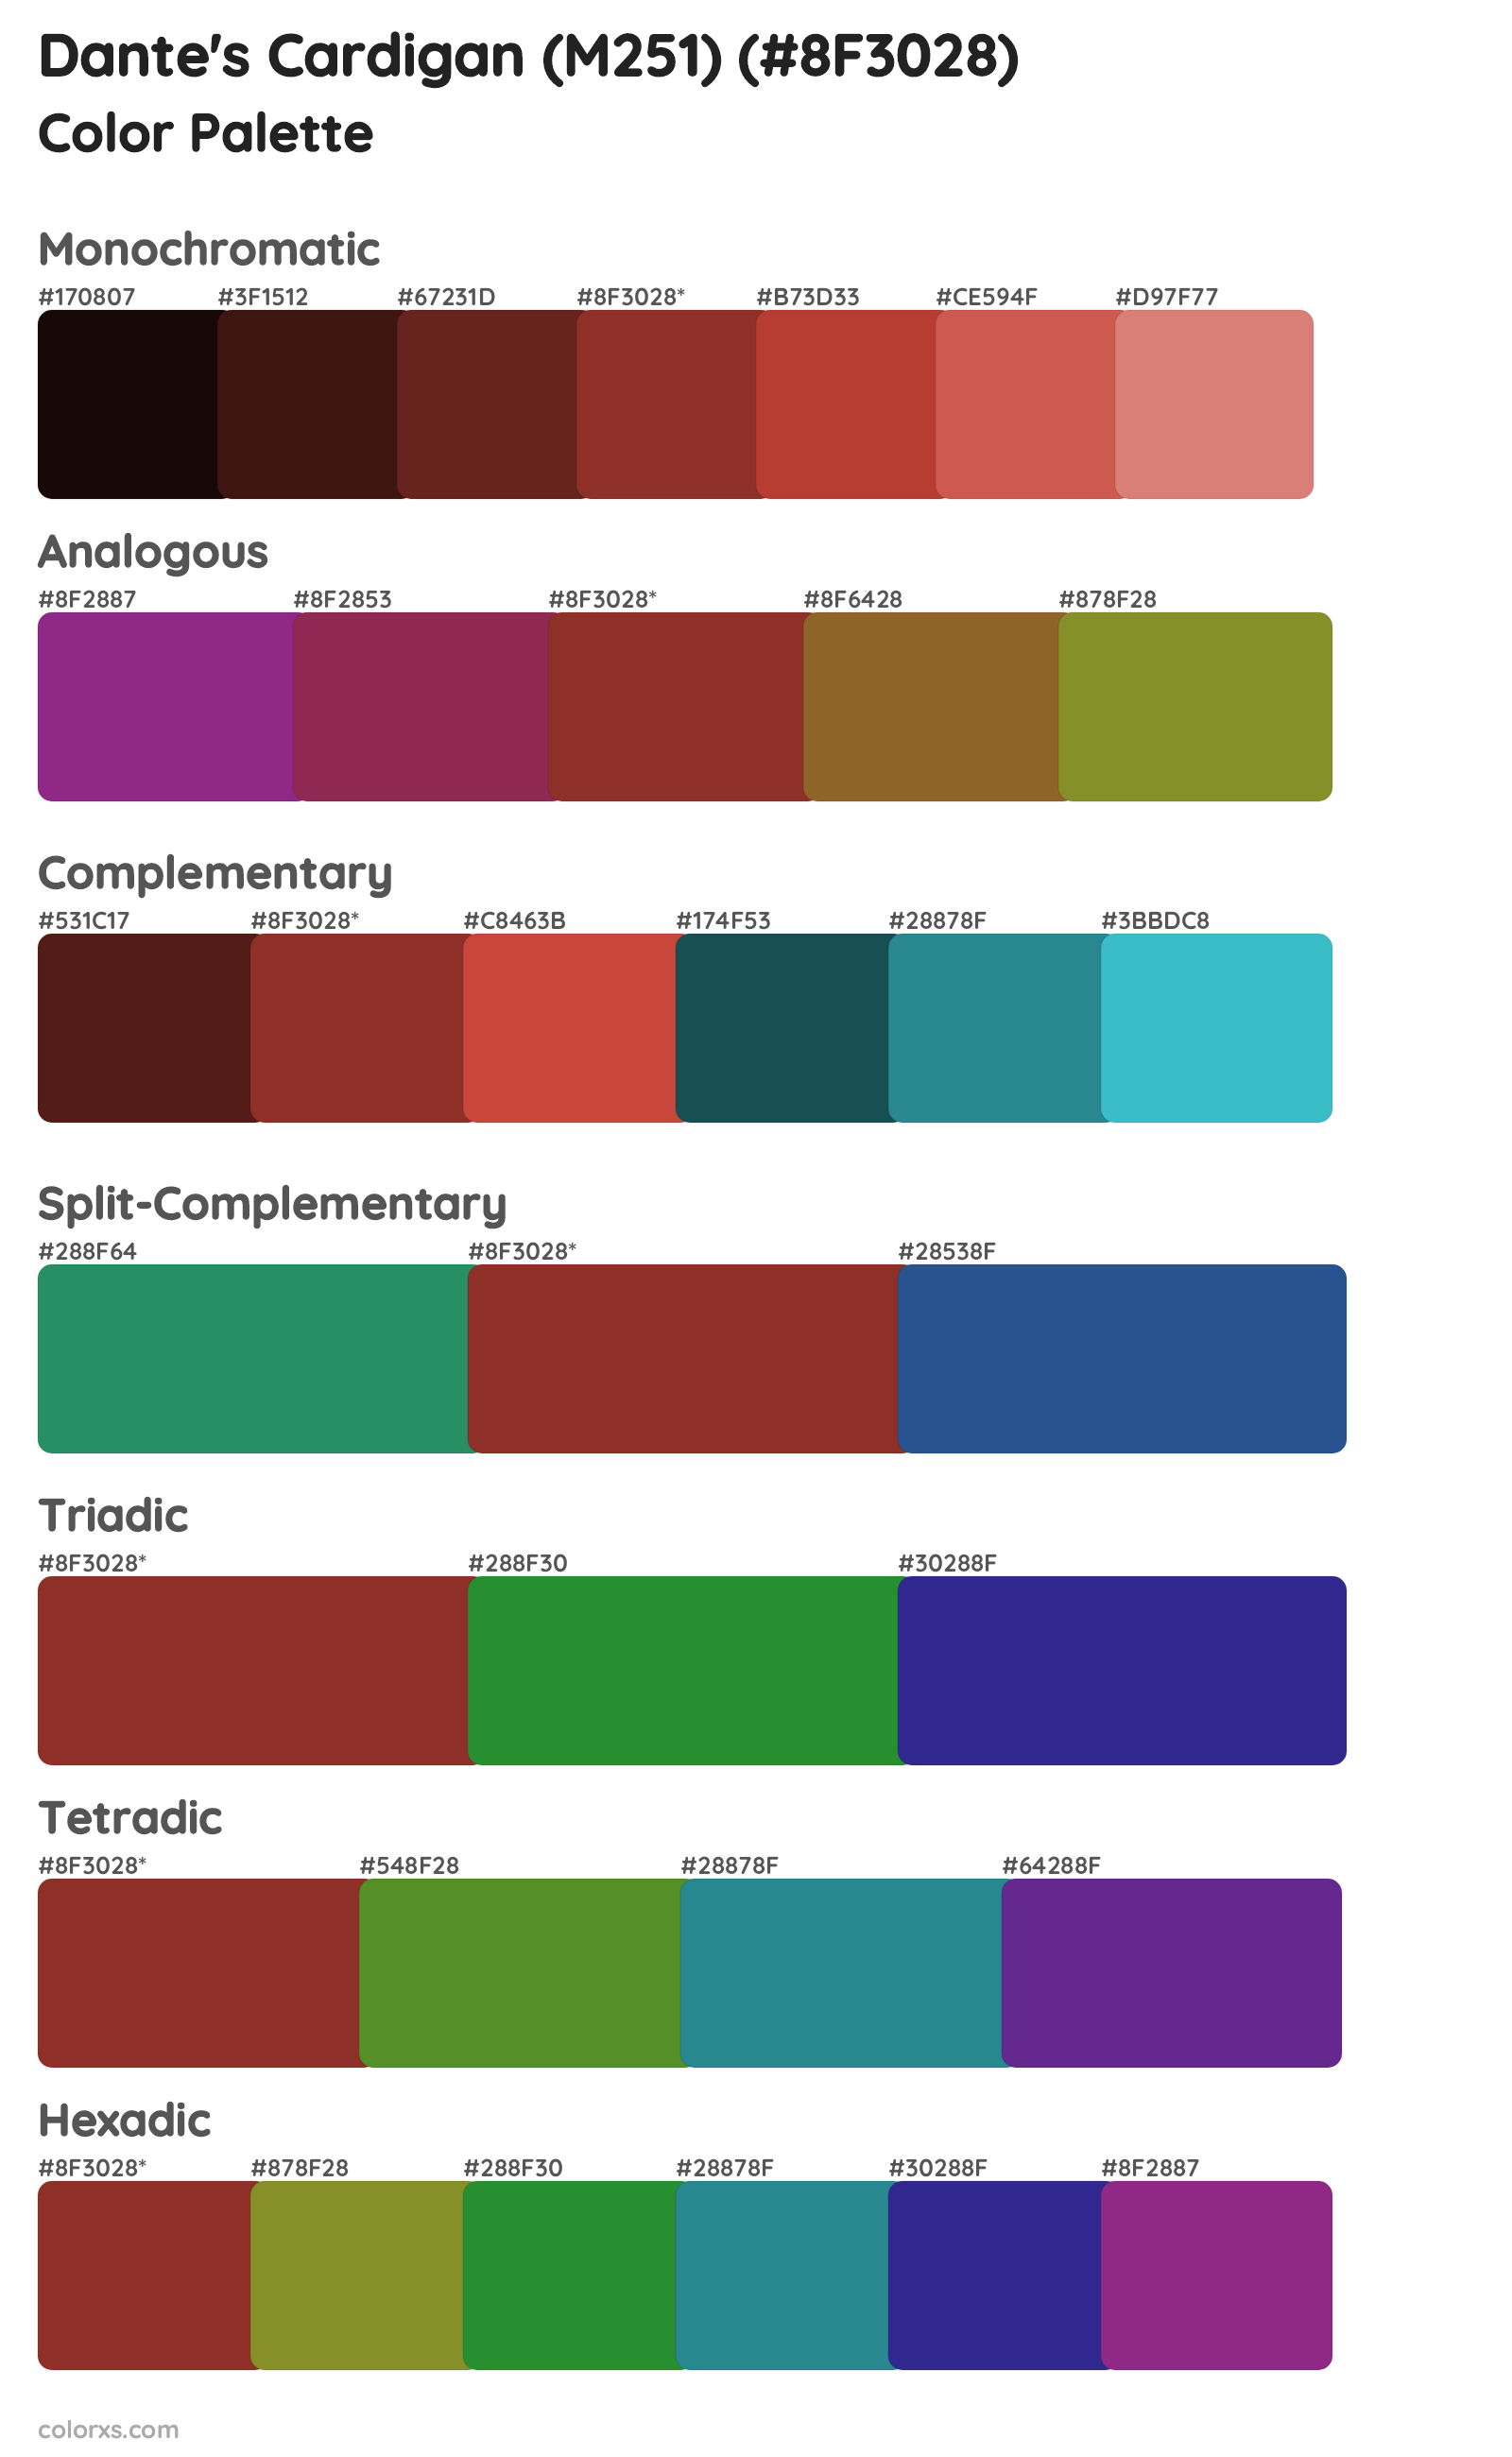 Dante's Cardigan (M251) Color Scheme Palettes